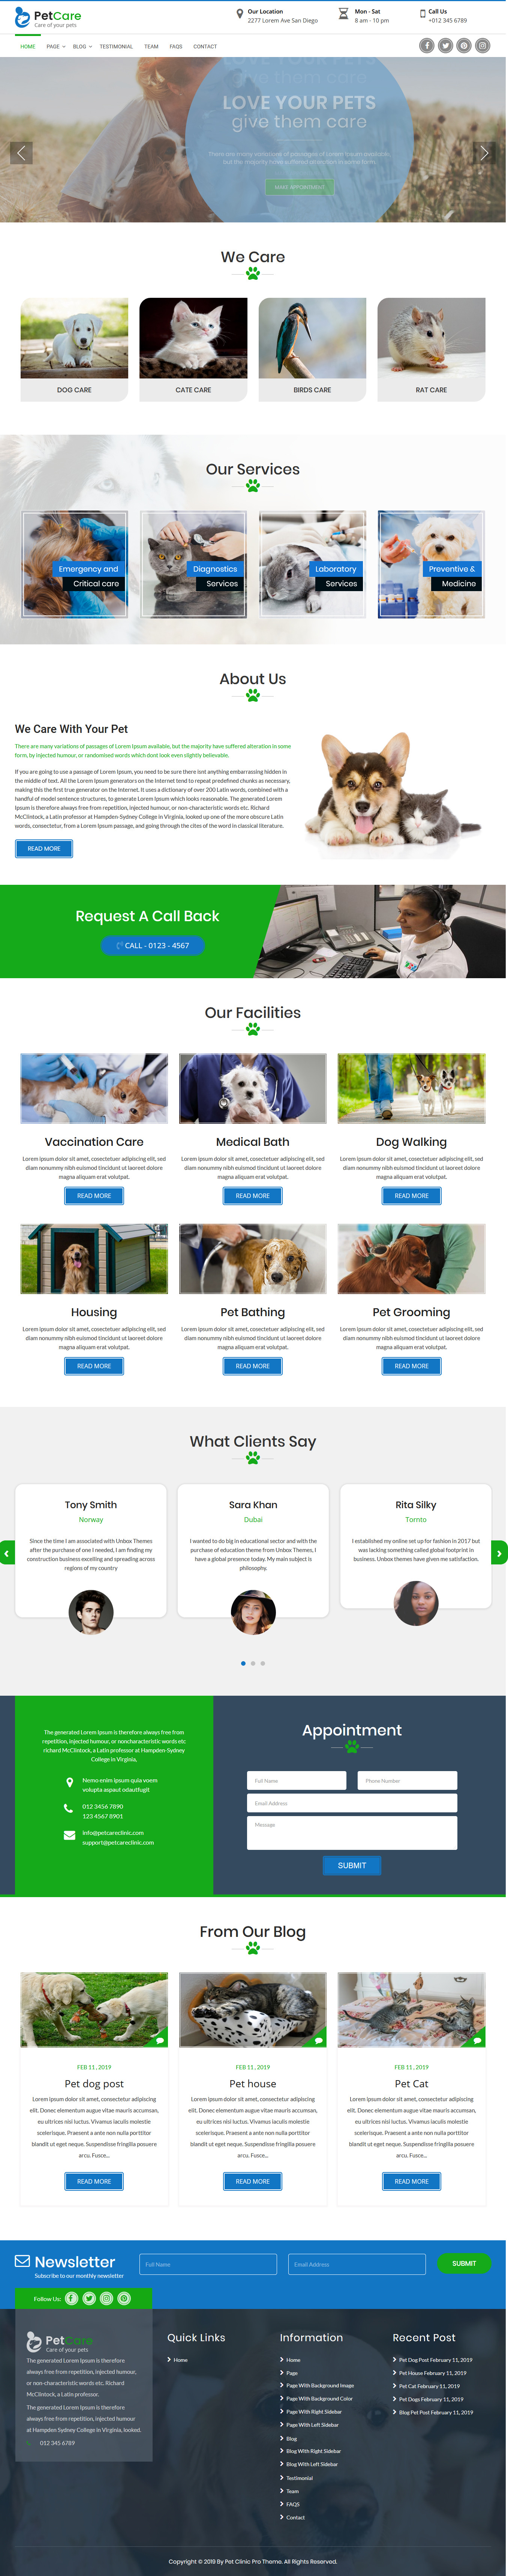 Pet Care Clinic - Los mejores temas gratuitos de WordPress para animales y mascotas